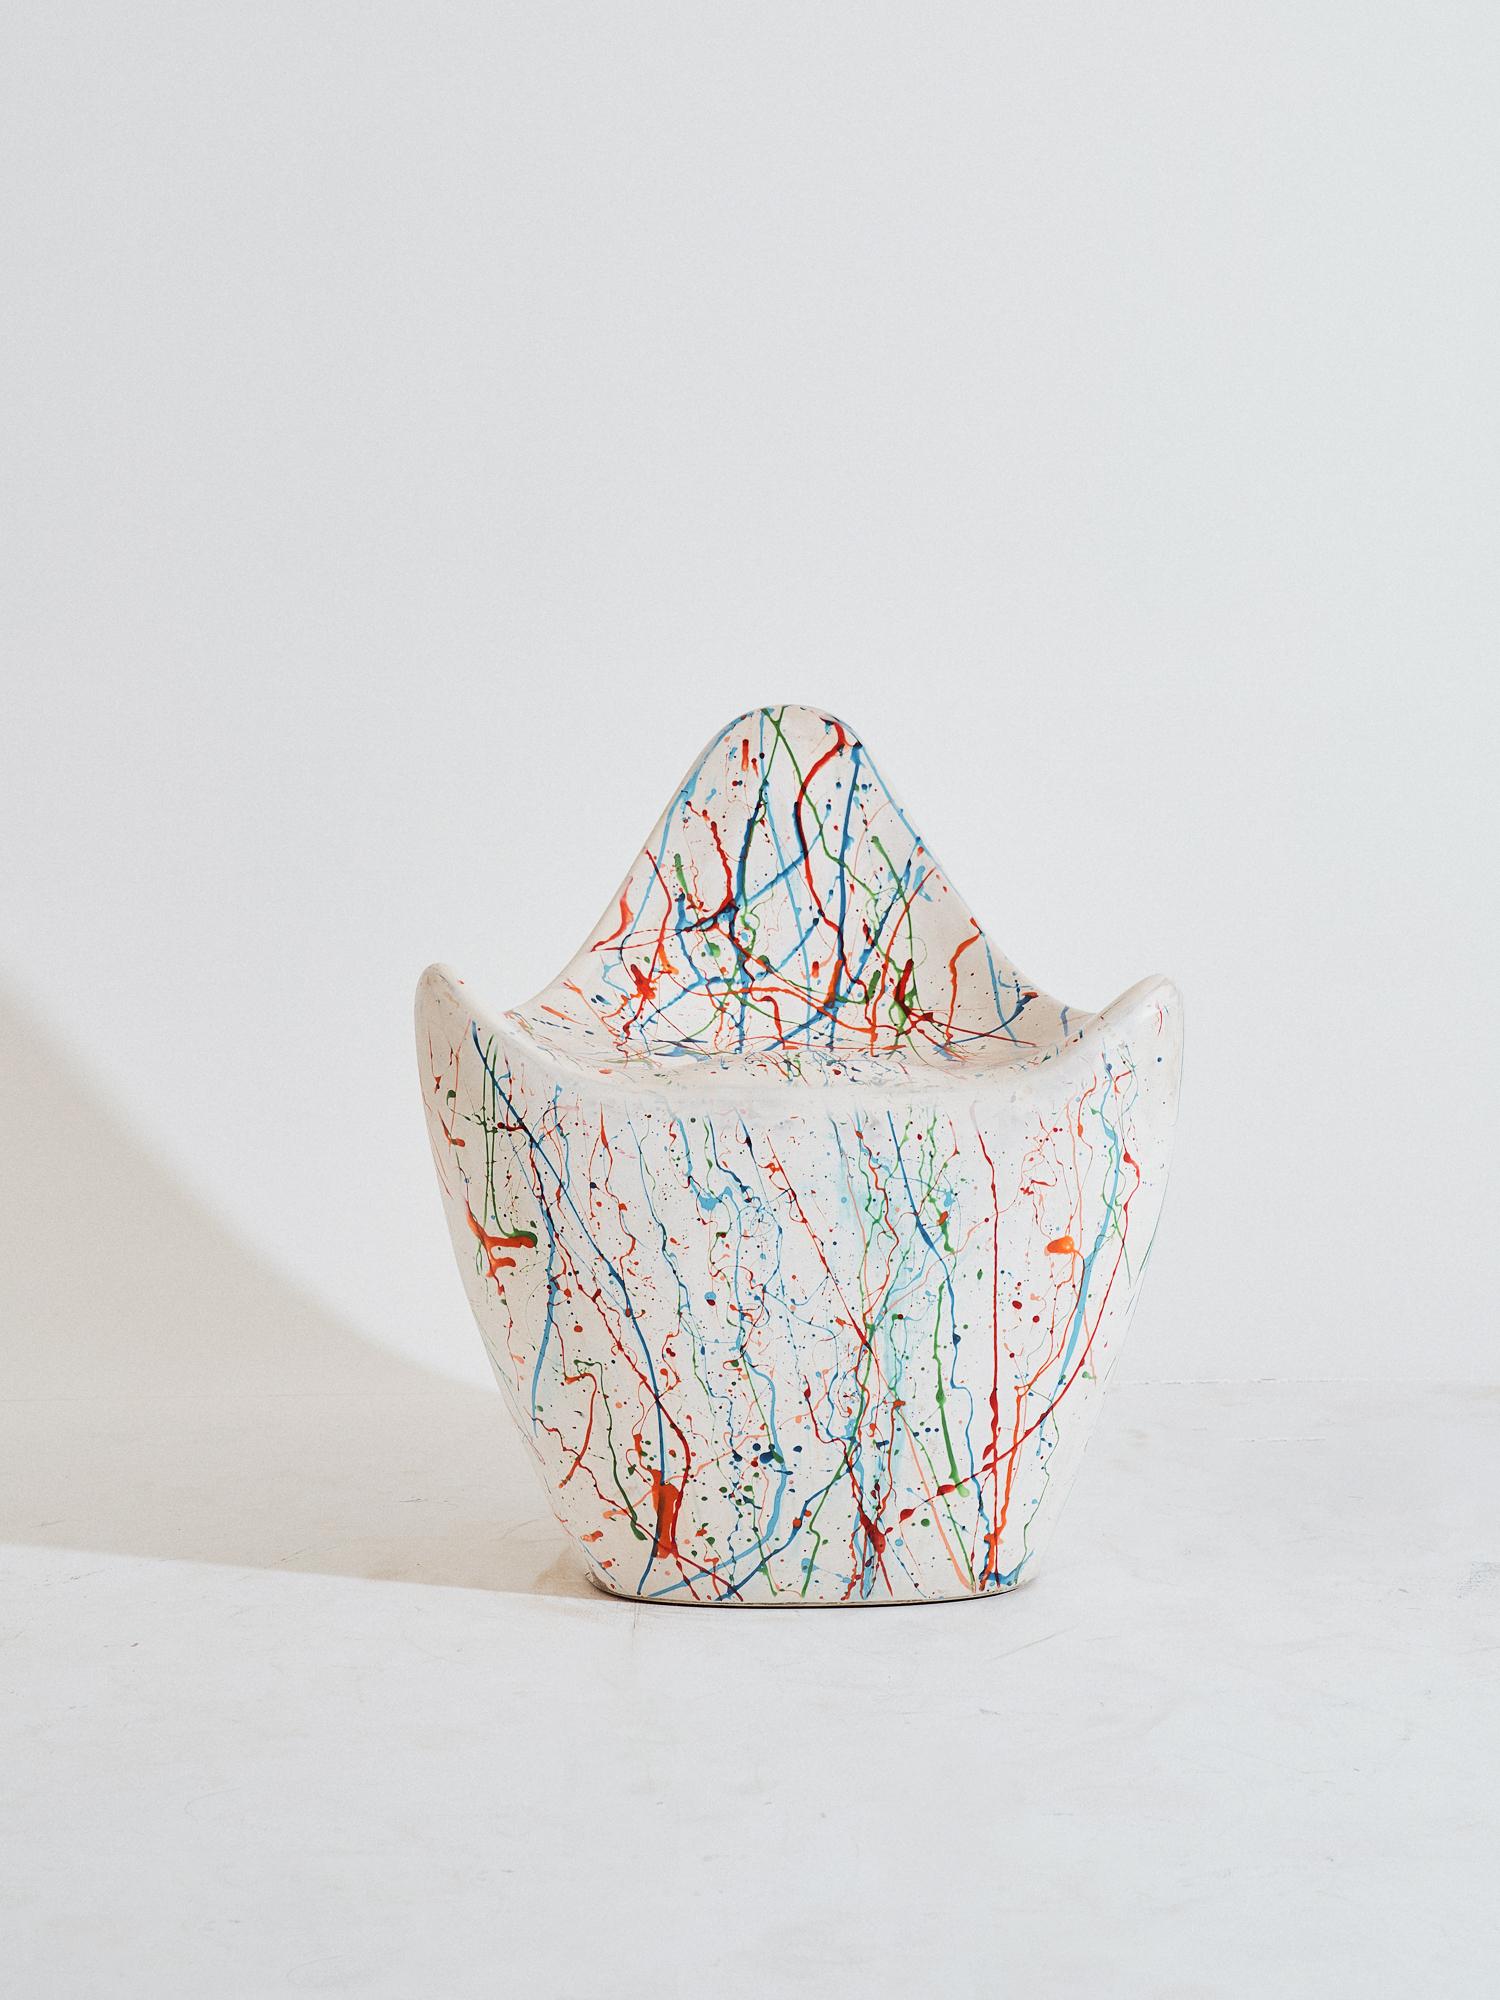 Sculptural Rainbow Cast Fiberglass Popcorn Chair Chaise contemporaine en fibre de verre sculptée à la main par Kunaal Kyhaan. La forme sensuelle est moulée dans une finition arc-en-ciel sculptée, créée organiquement à l'aide de colorants au cours du